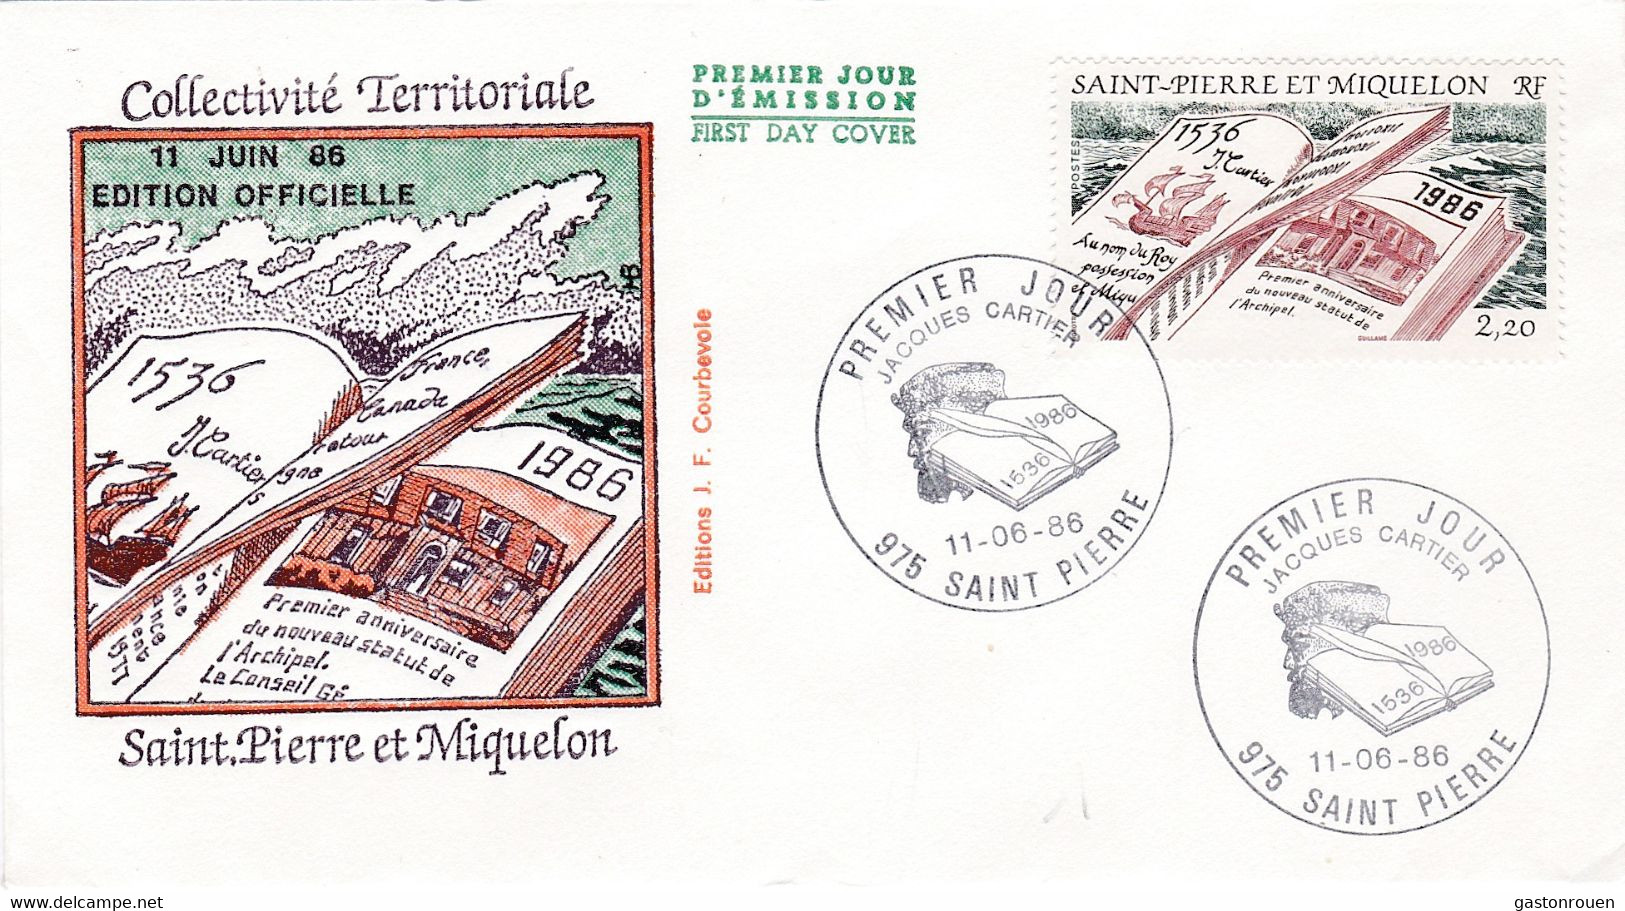 St Pierre & Miquelon PREMIER JOUR FDC 1986 470 Collectivité Territoriale - FDC